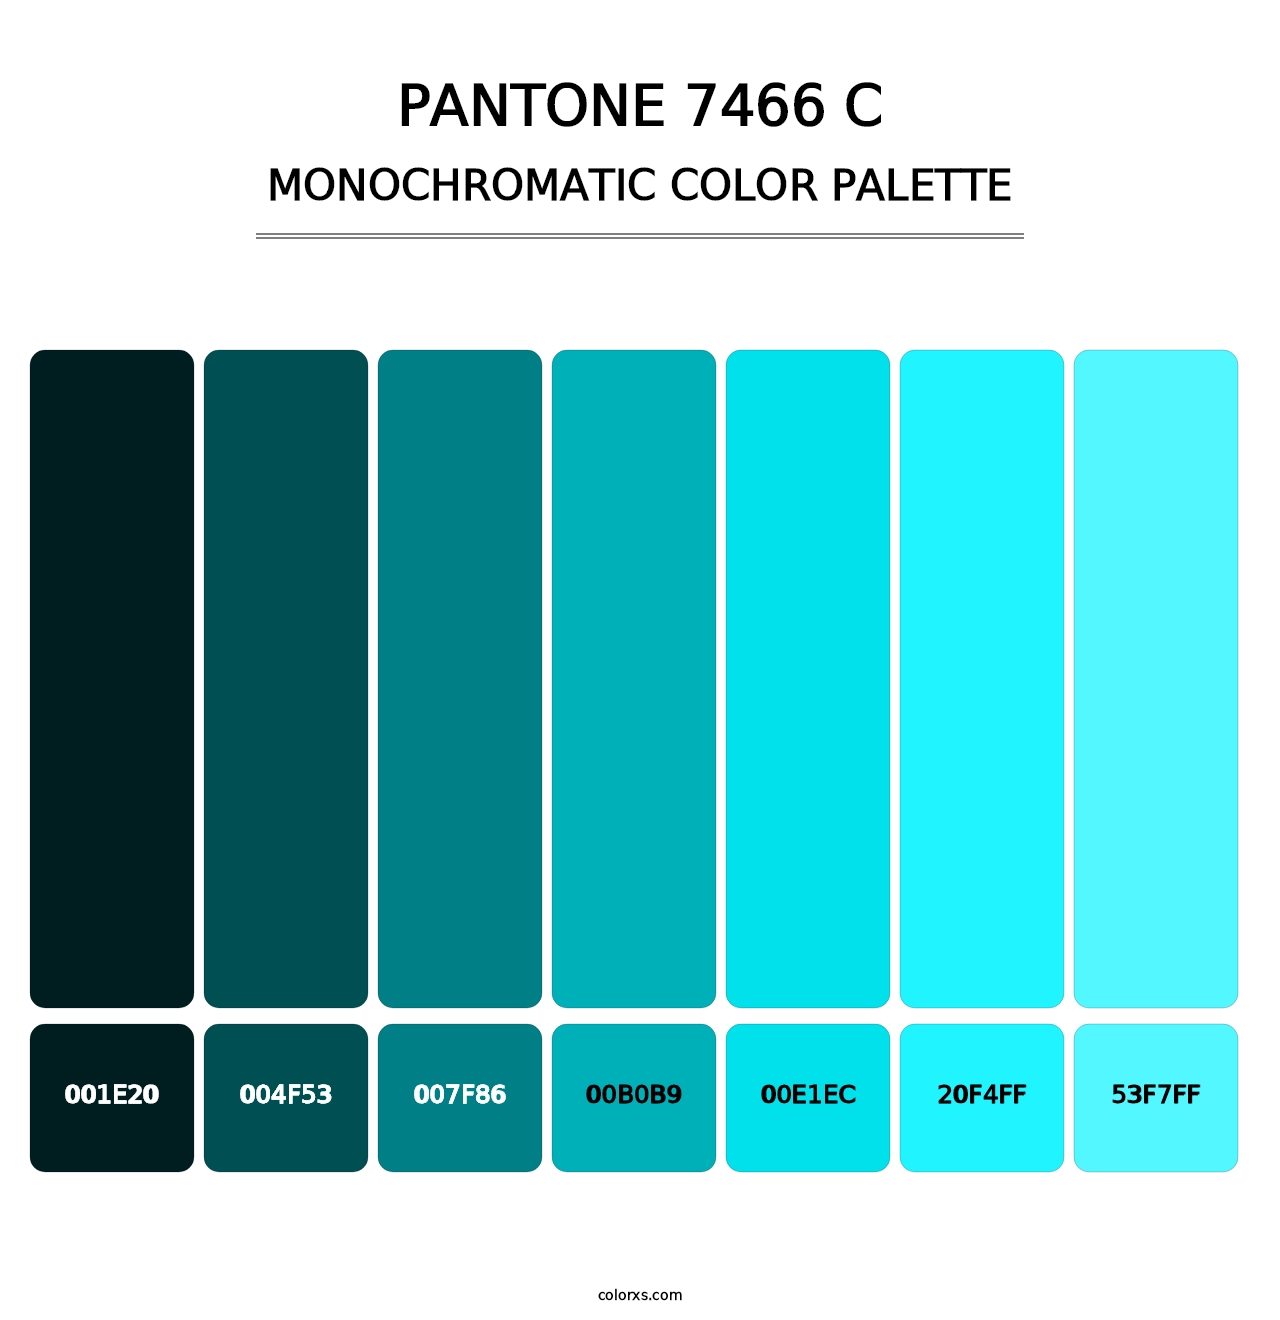 PANTONE 7466 C - Monochromatic Color Palette